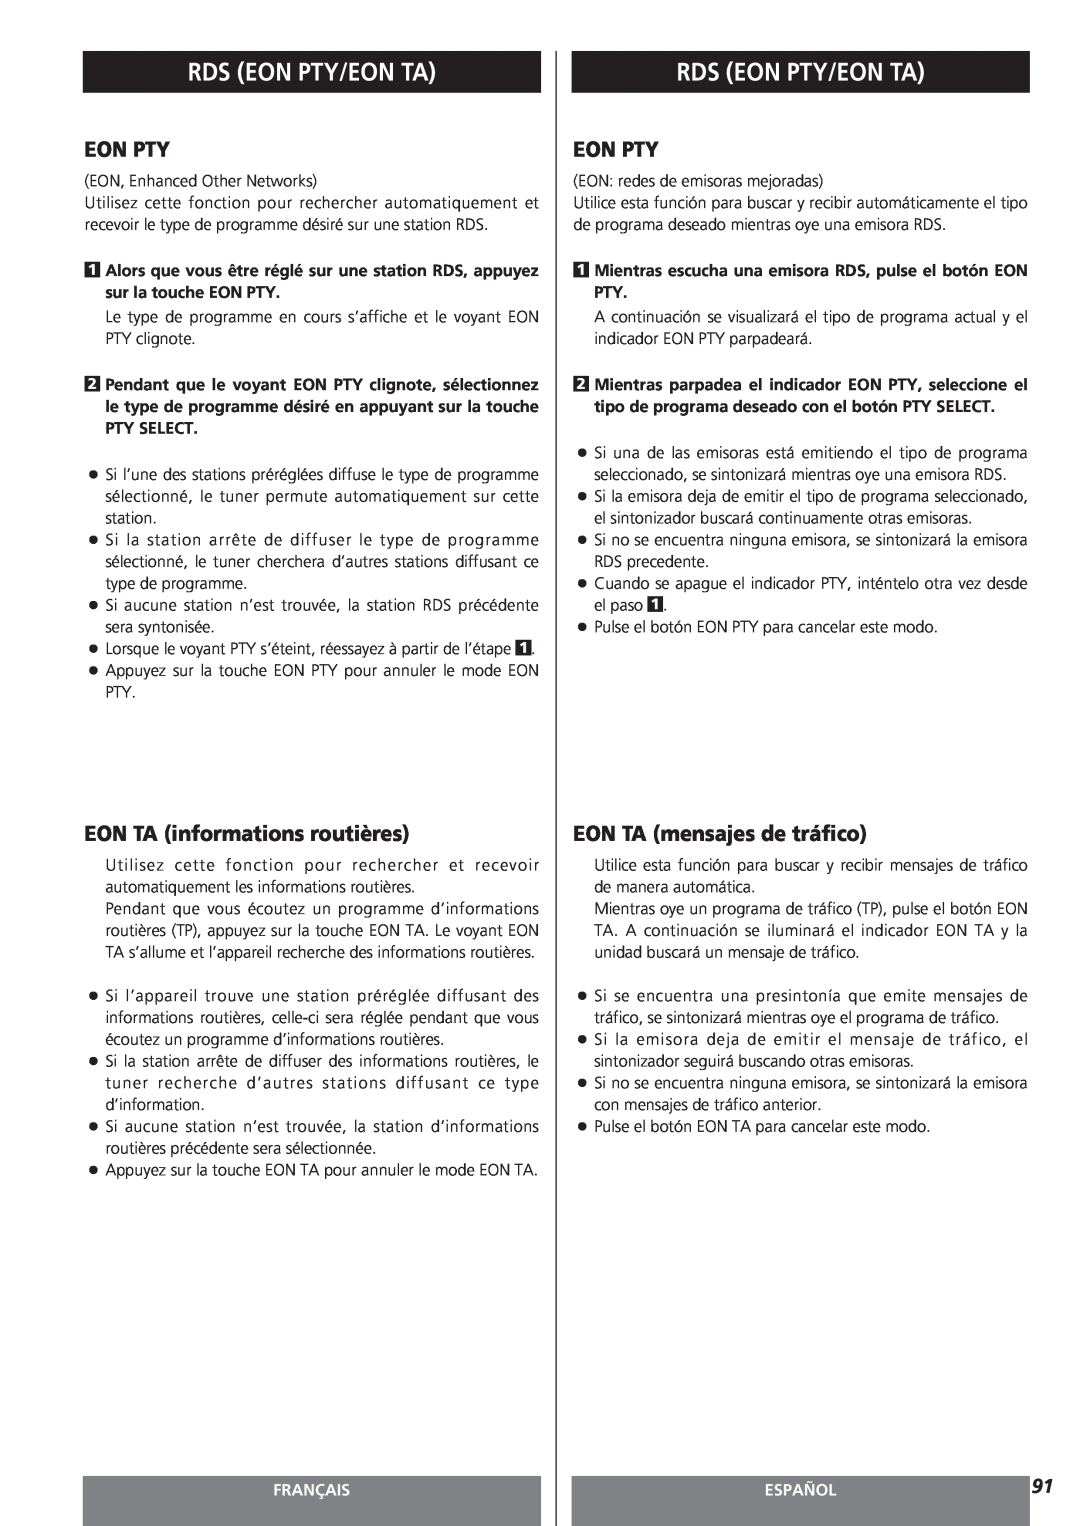 Teac AG-15D owner manual EON TA informations routières, EON TA mensajes de tráfico, Rds Eon Pty/Eon Ta, Français, Español 